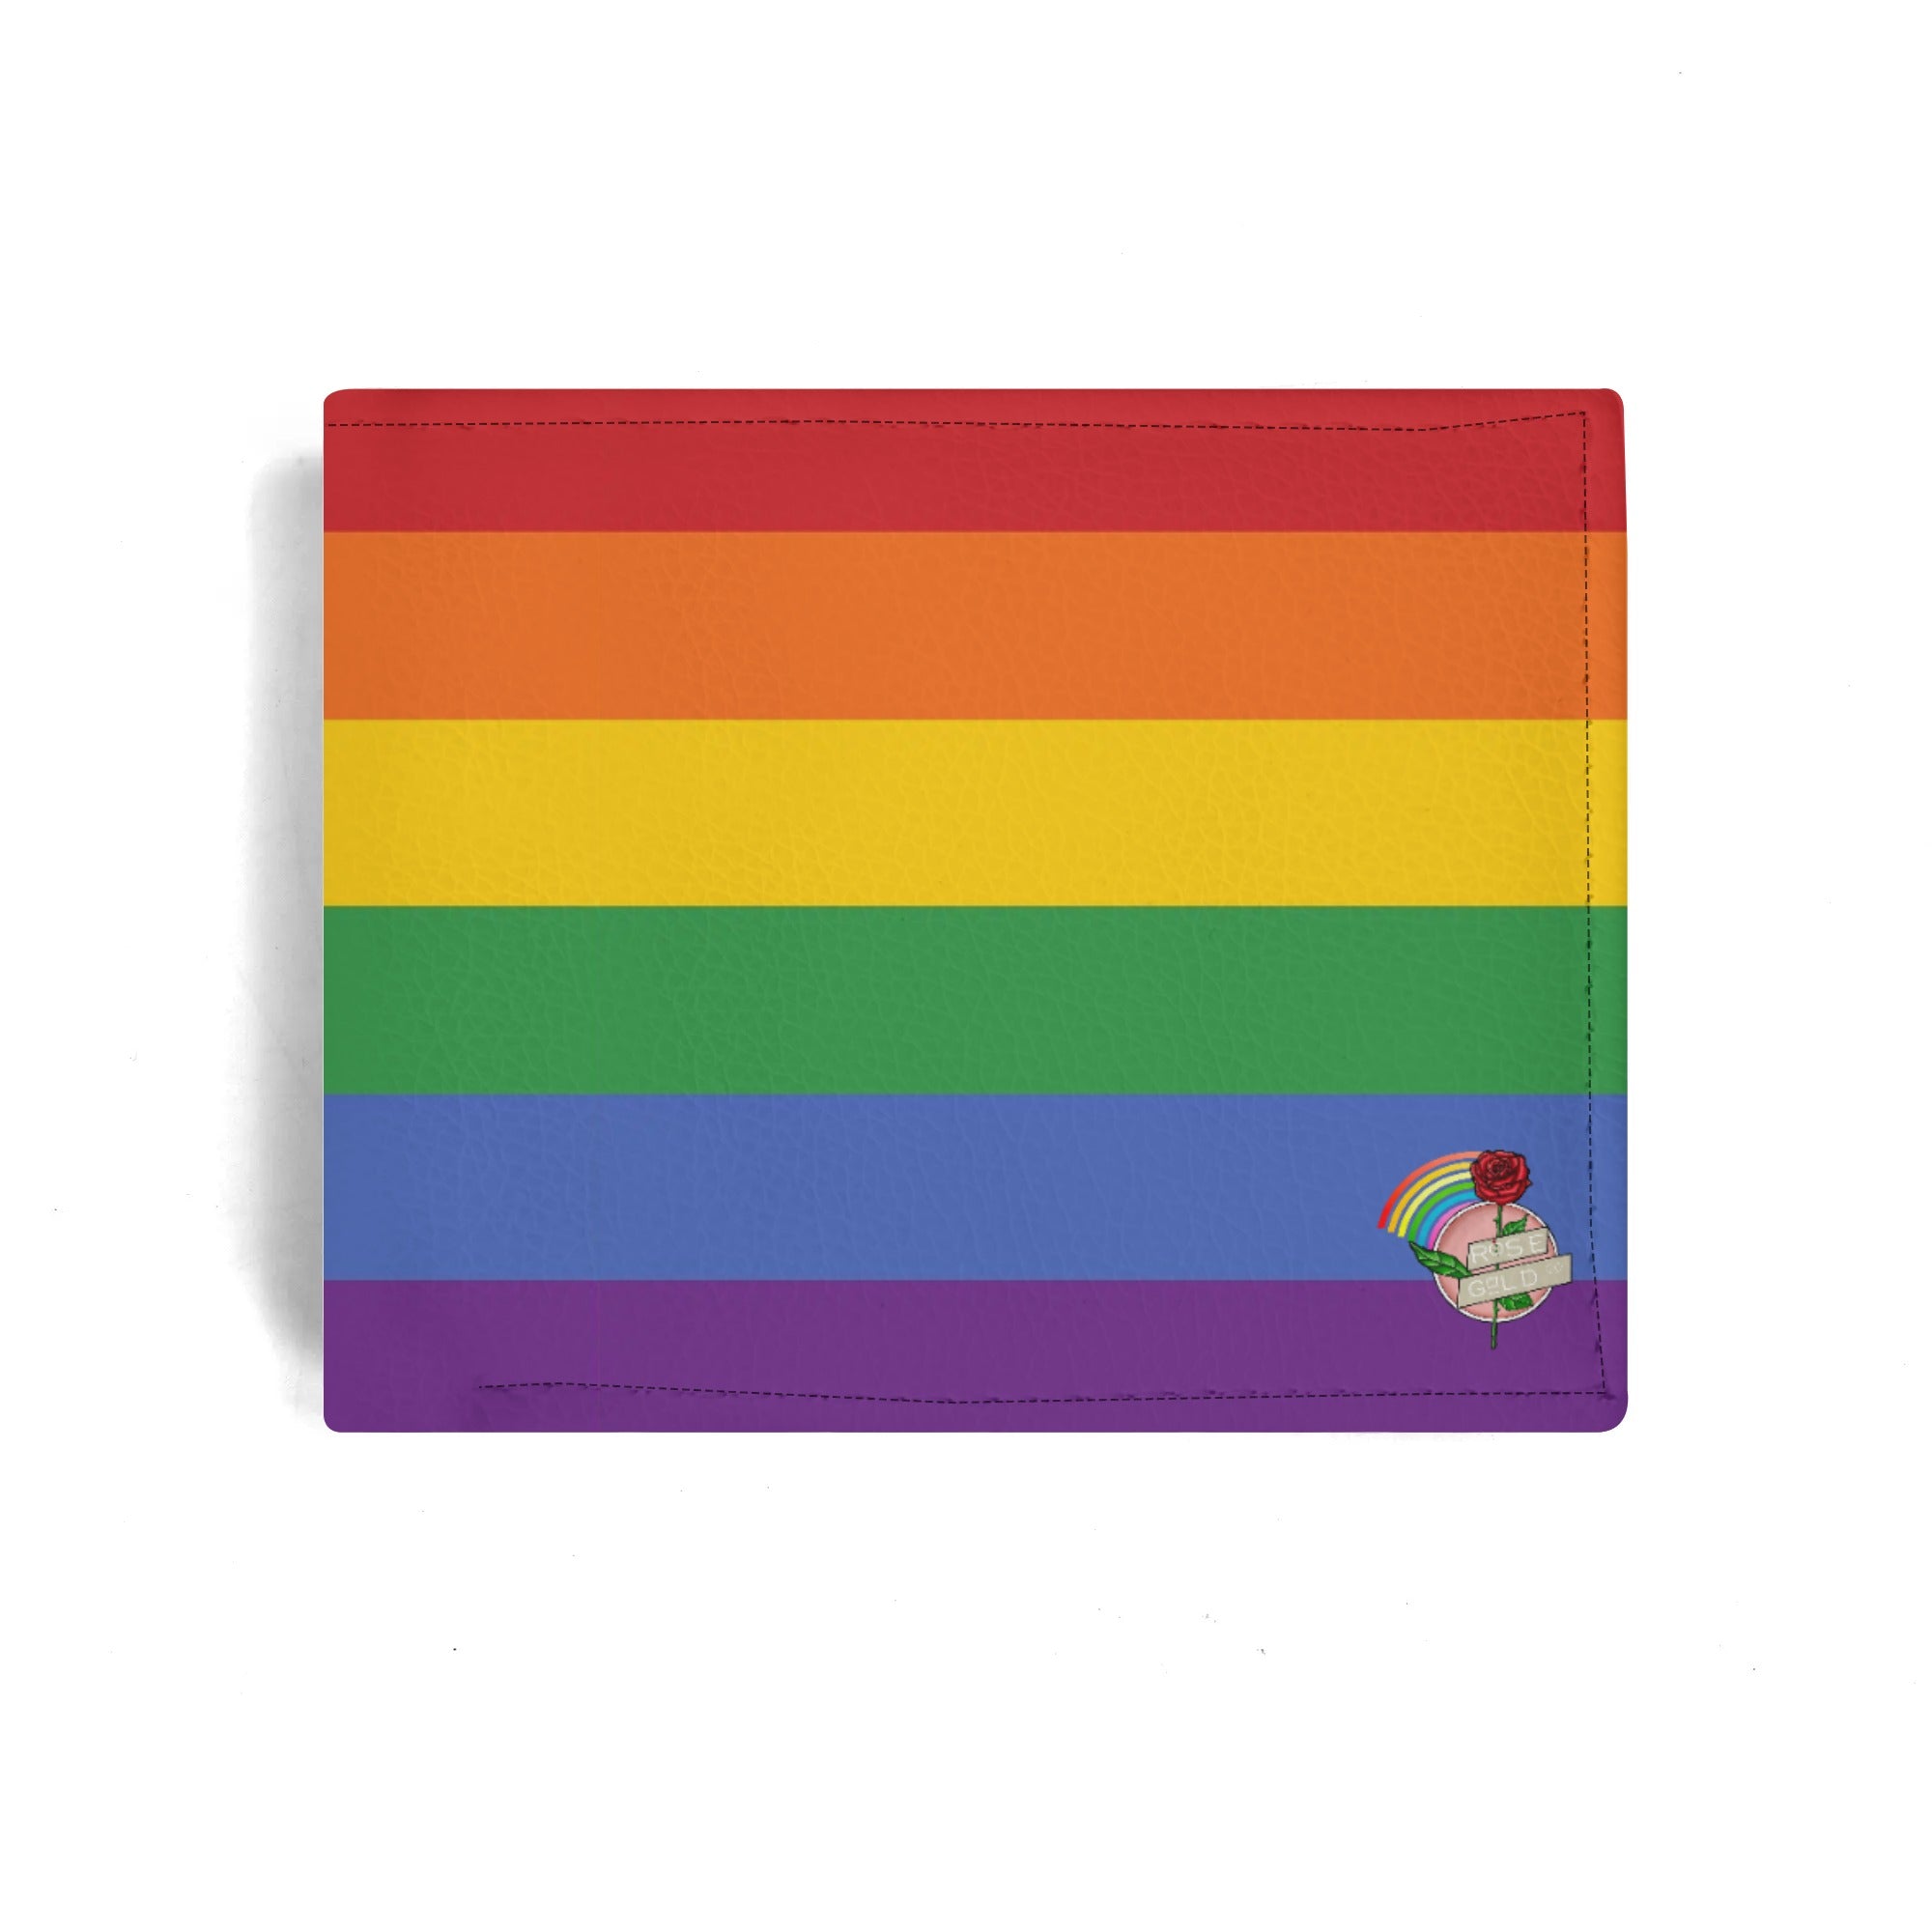 Rainbow Pride Flag Minimalist PU Leather Wallet